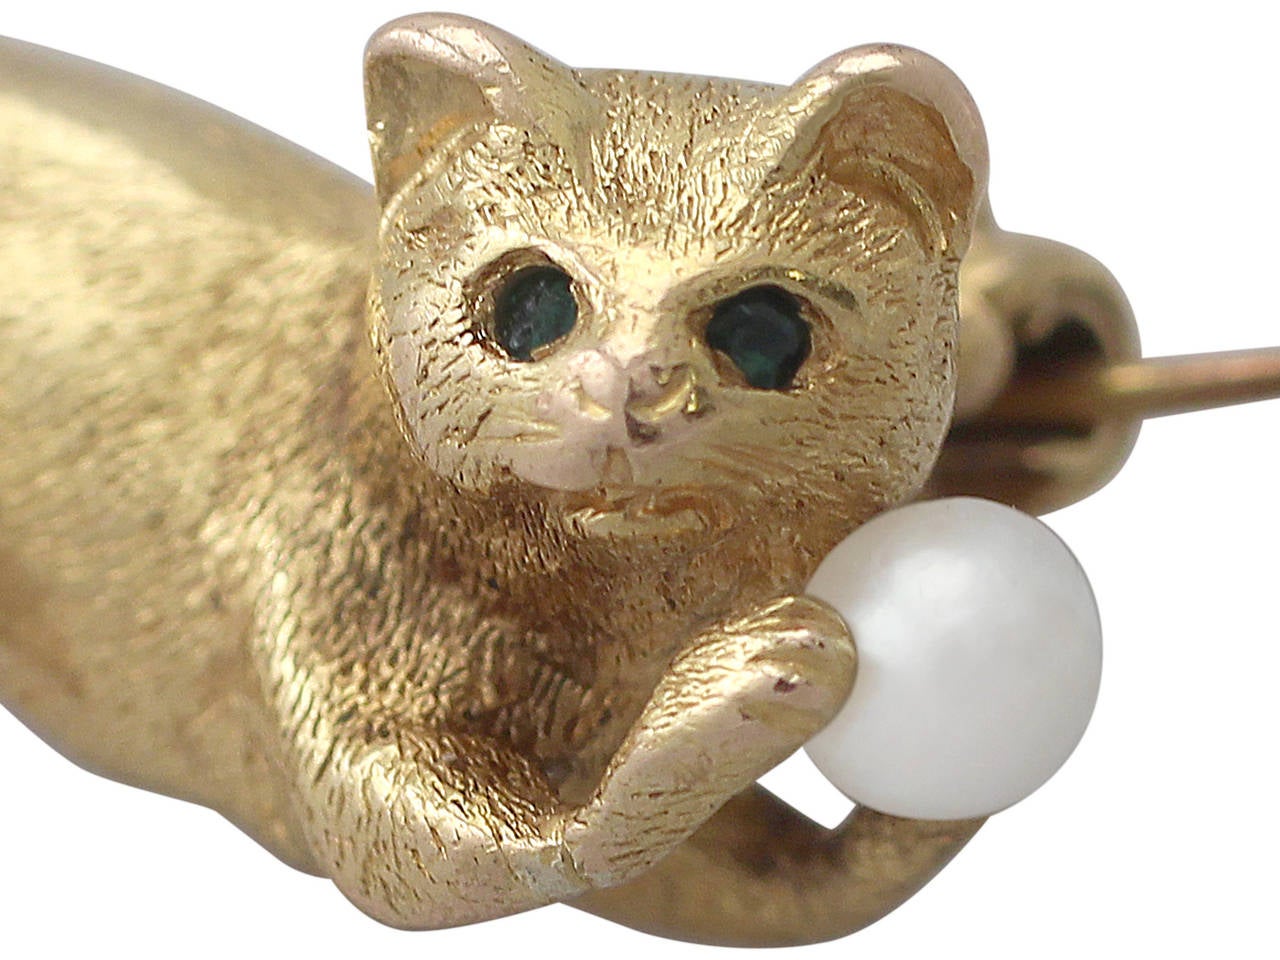 gold cat brooch